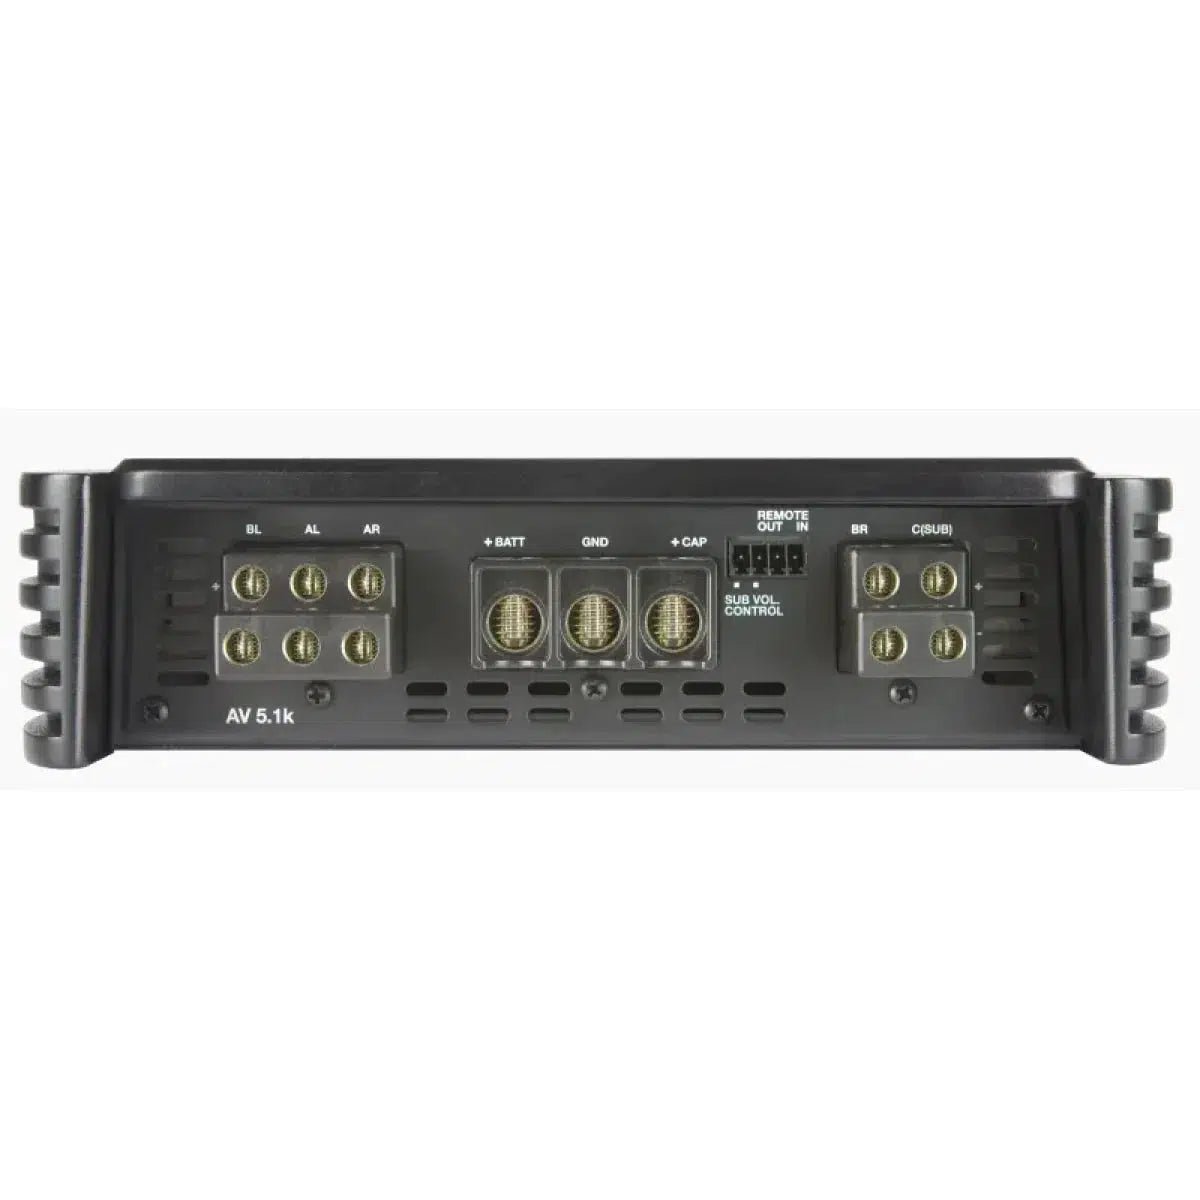 Amplificador de 5 canales Audison-Voce AV 5.1k-Masori.de